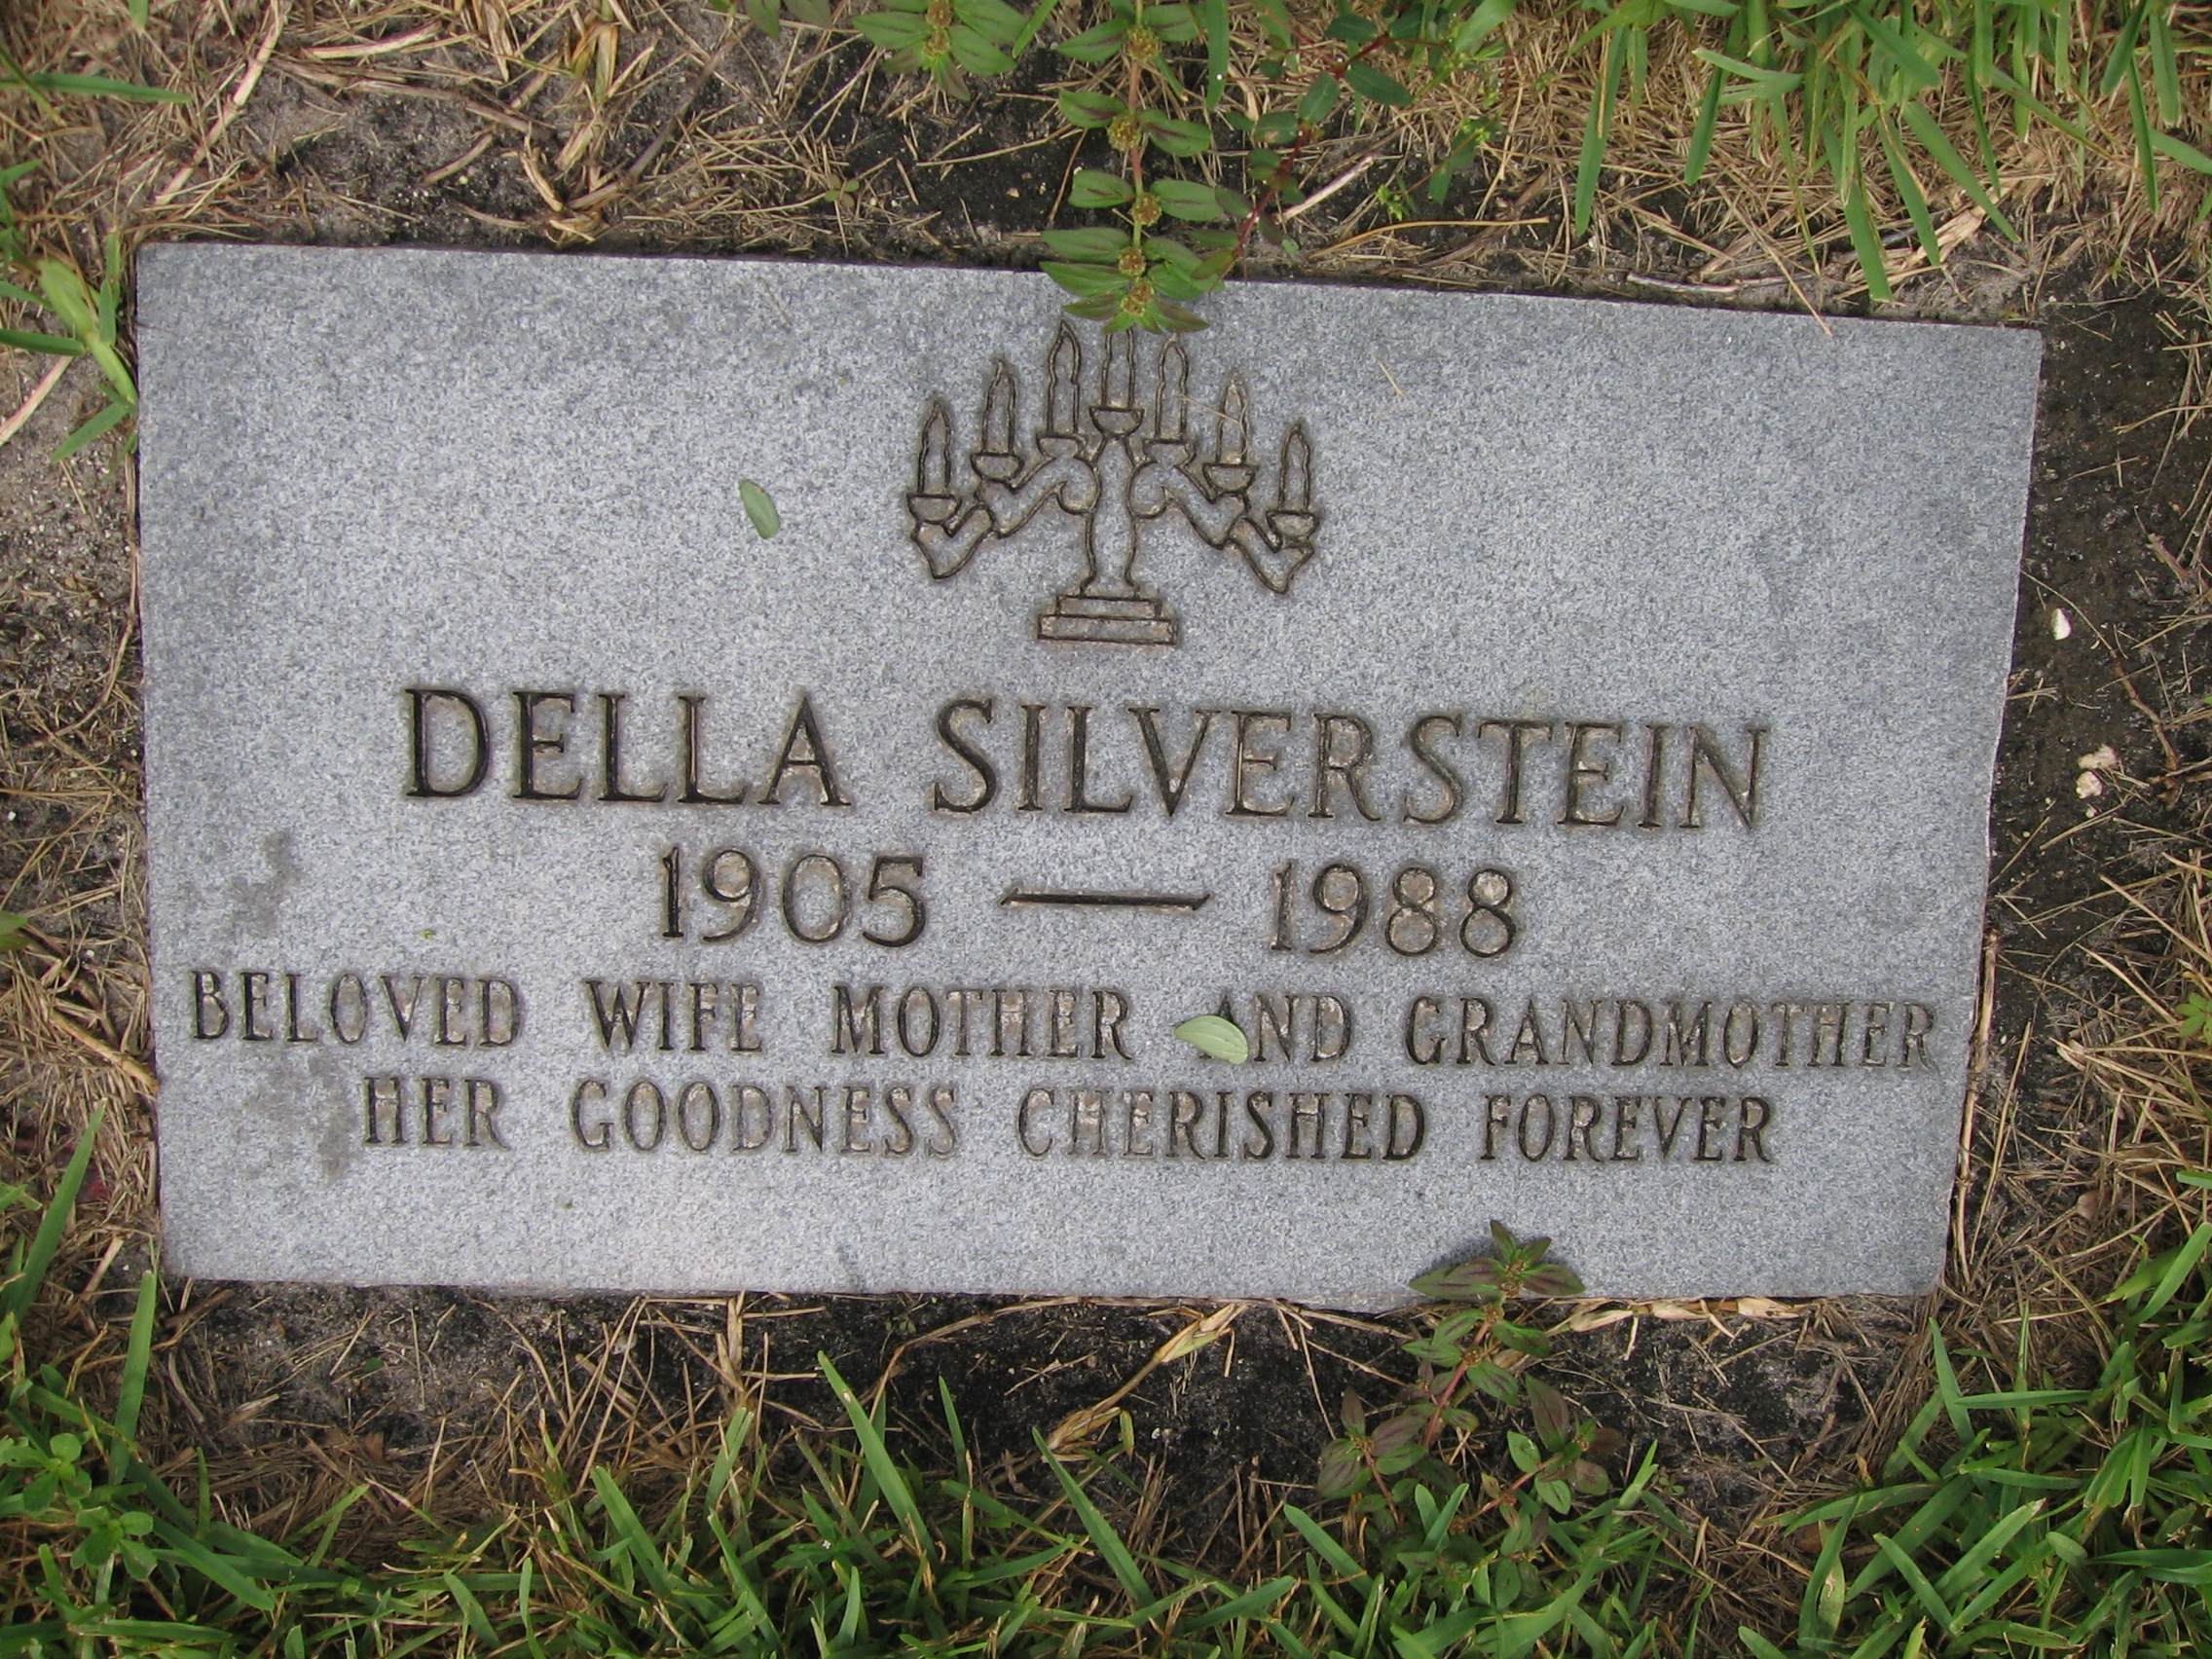 Della Silverstein